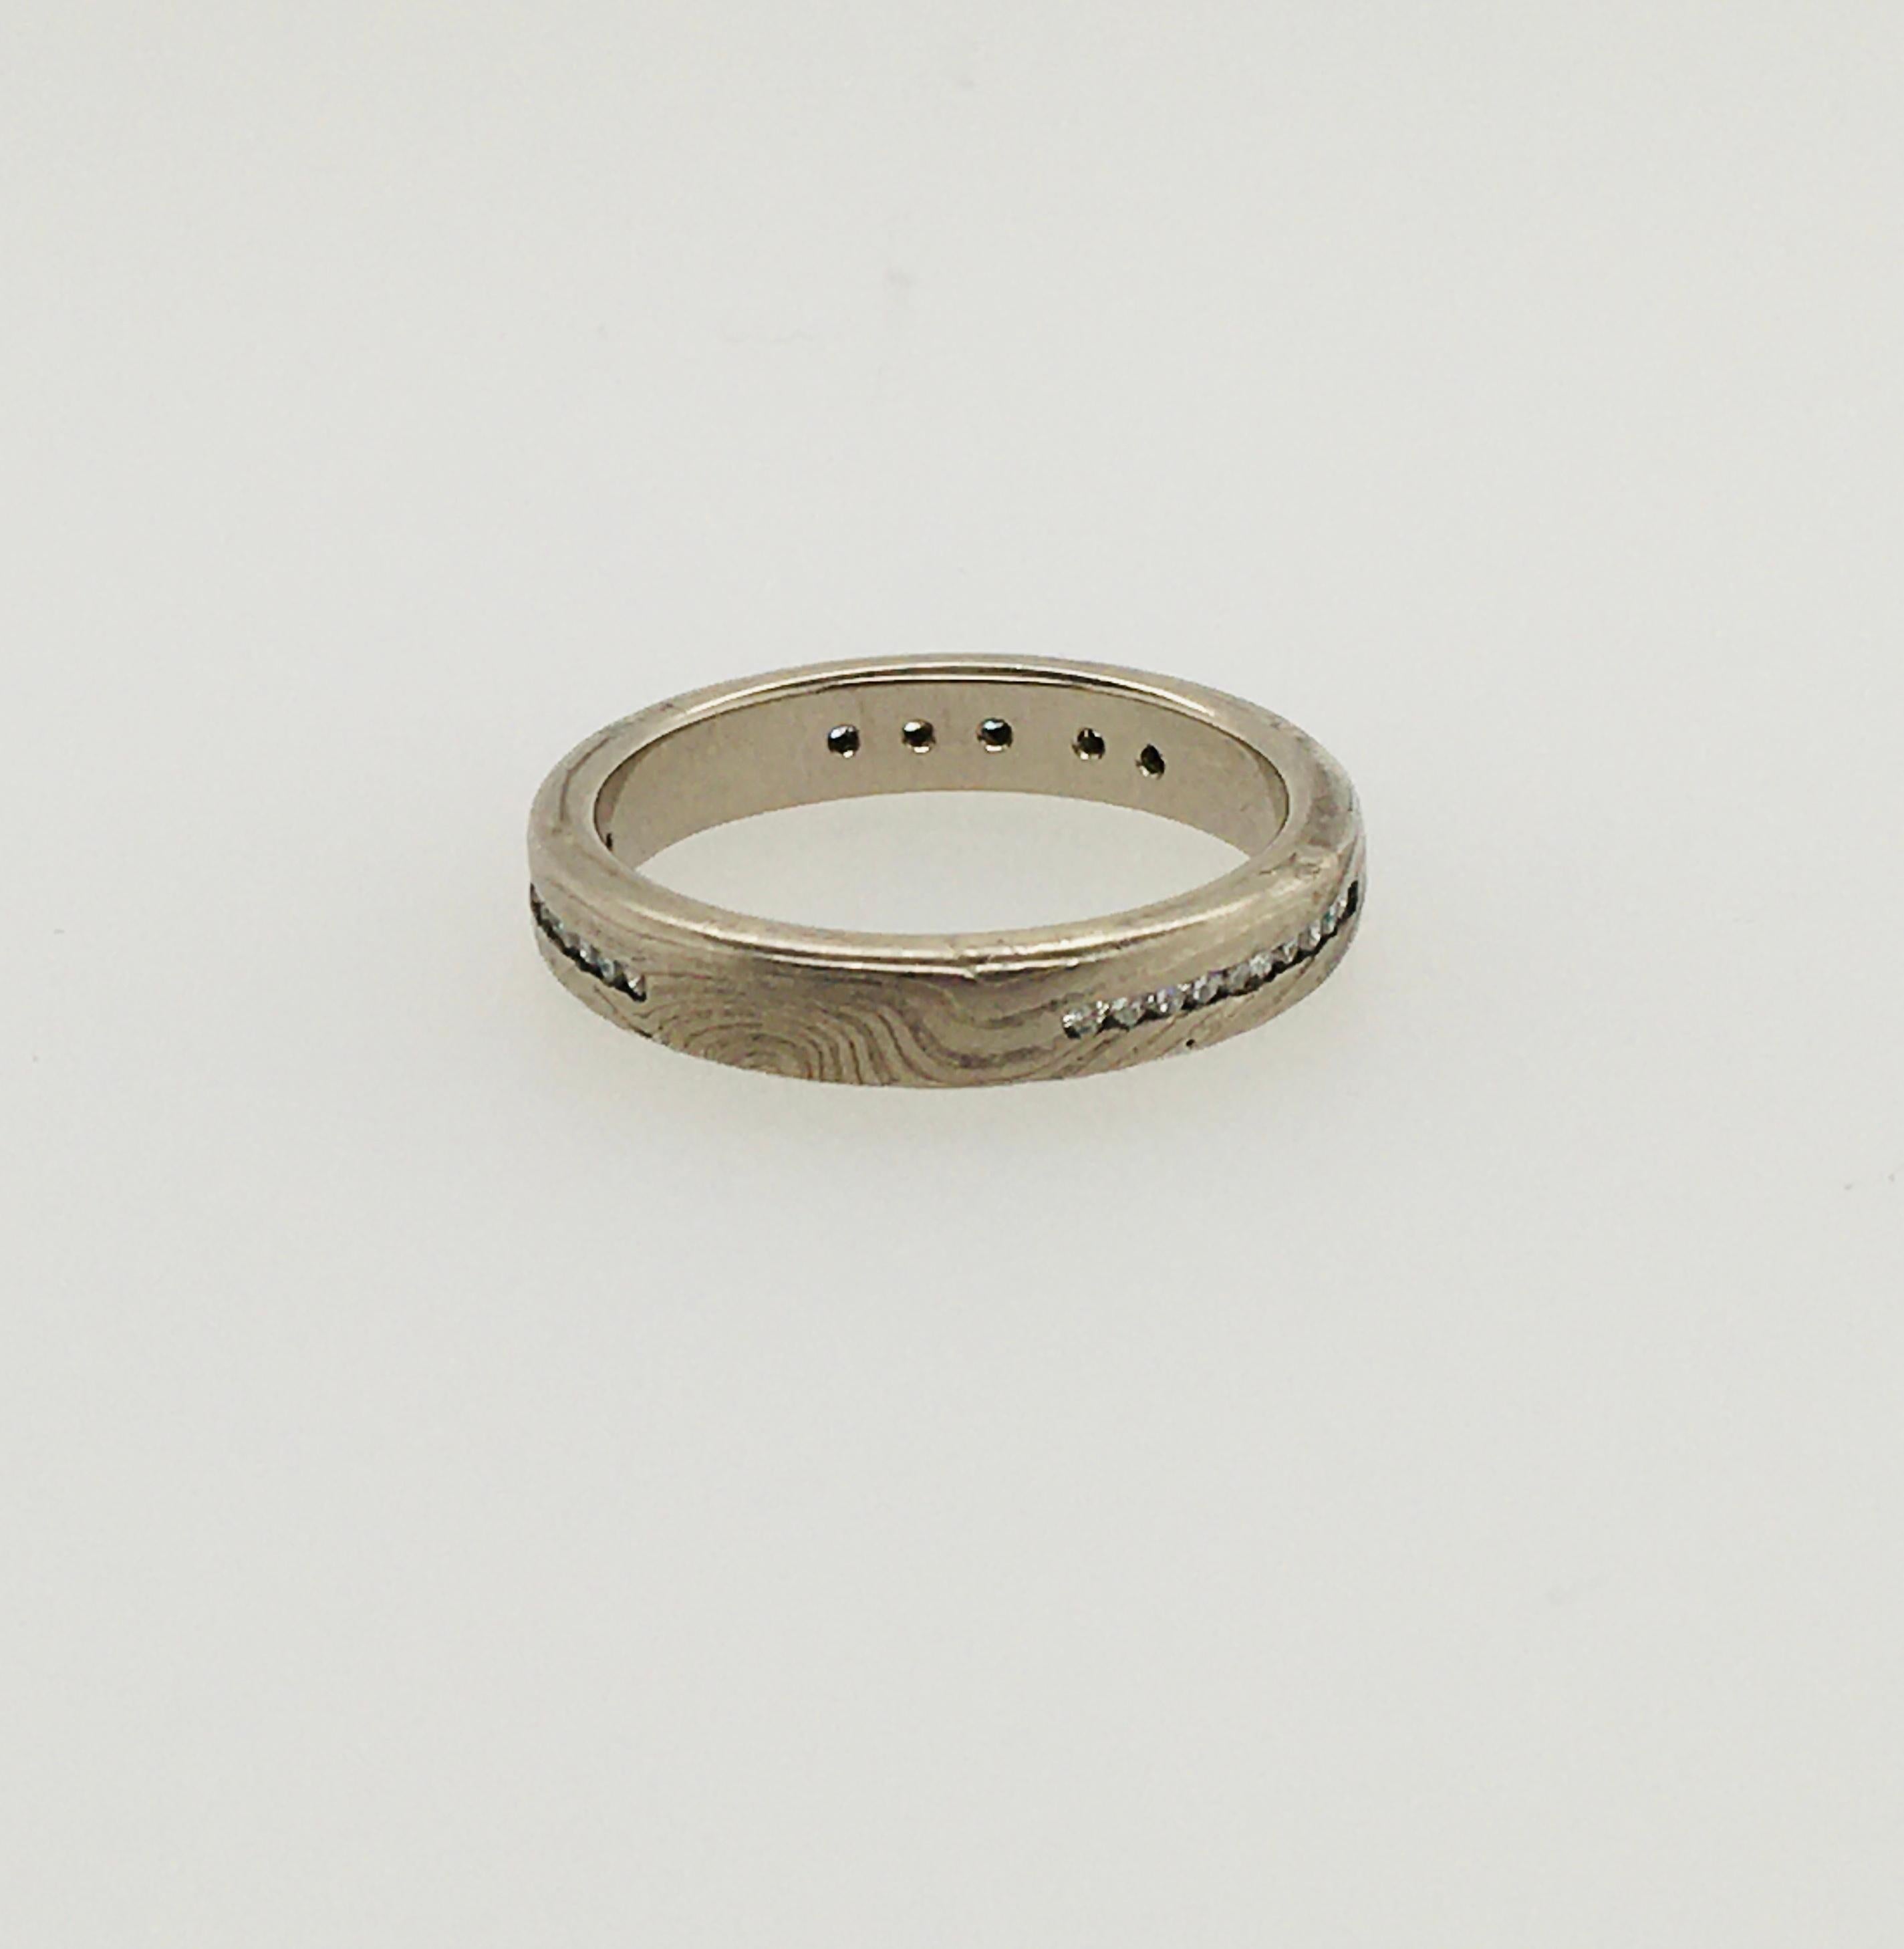 Remarquable bracelet plat George Sawyer de 3,6 mm en or gris 14K et argent sterling gravé, dans le style distinctif de Mokume. La bague comporte 3 canaux de 10 diamants ronds, chacun serti en or 14KW, .14 TCW.   Le tampon intérieur indique 